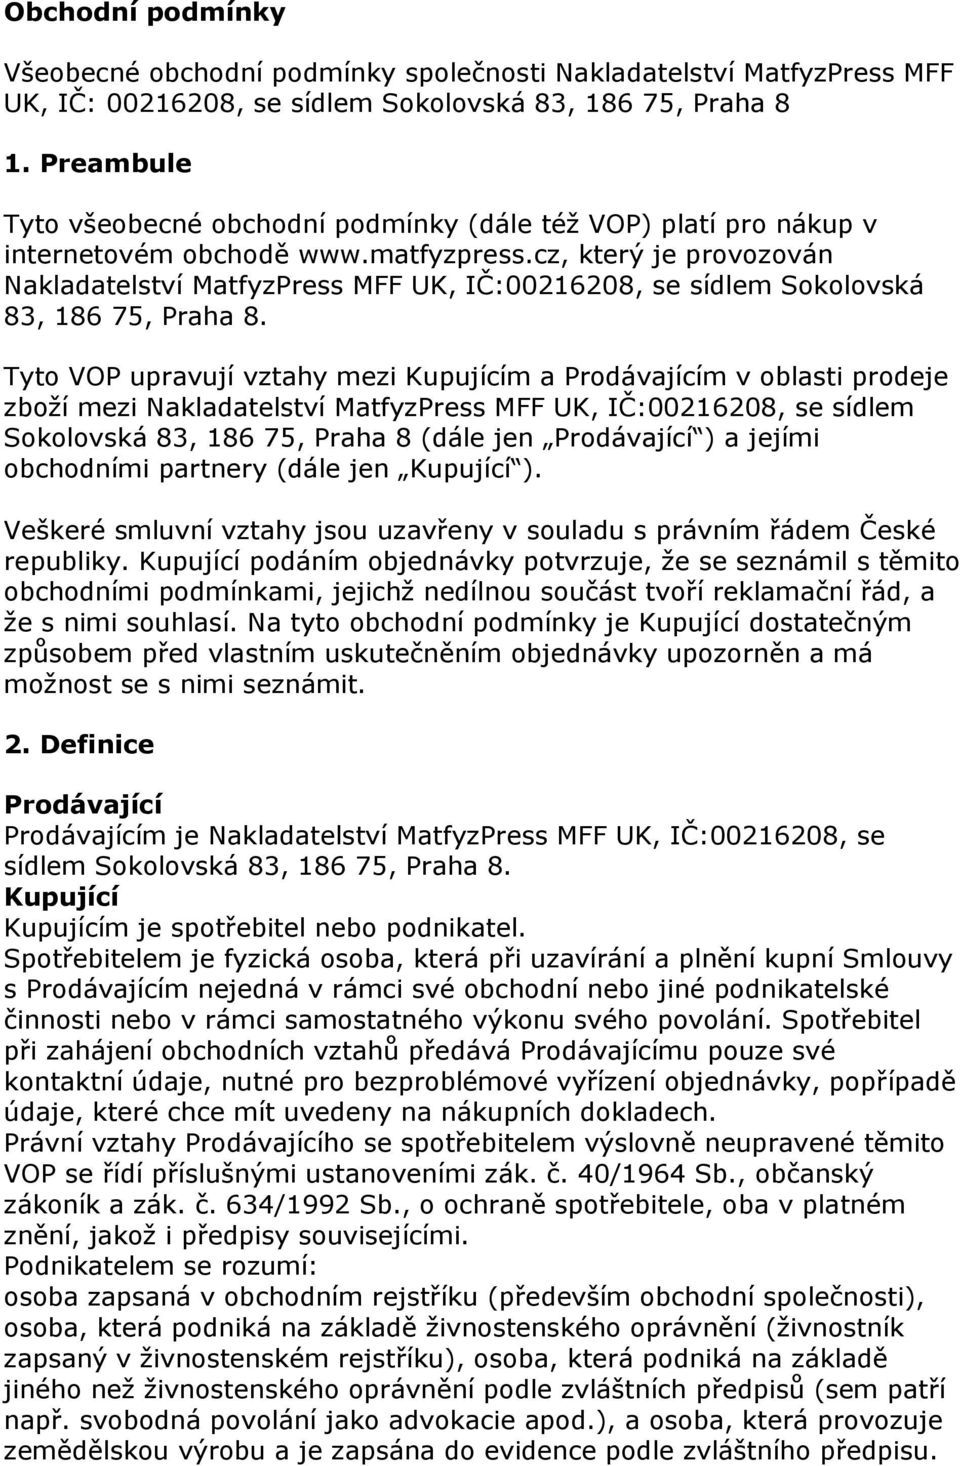 cz, který je provozován Nakladatelství MatfyzPress MFF UK, IČ:00216208, se sídlem Sokolovská 83, 186 75, Praha 8.